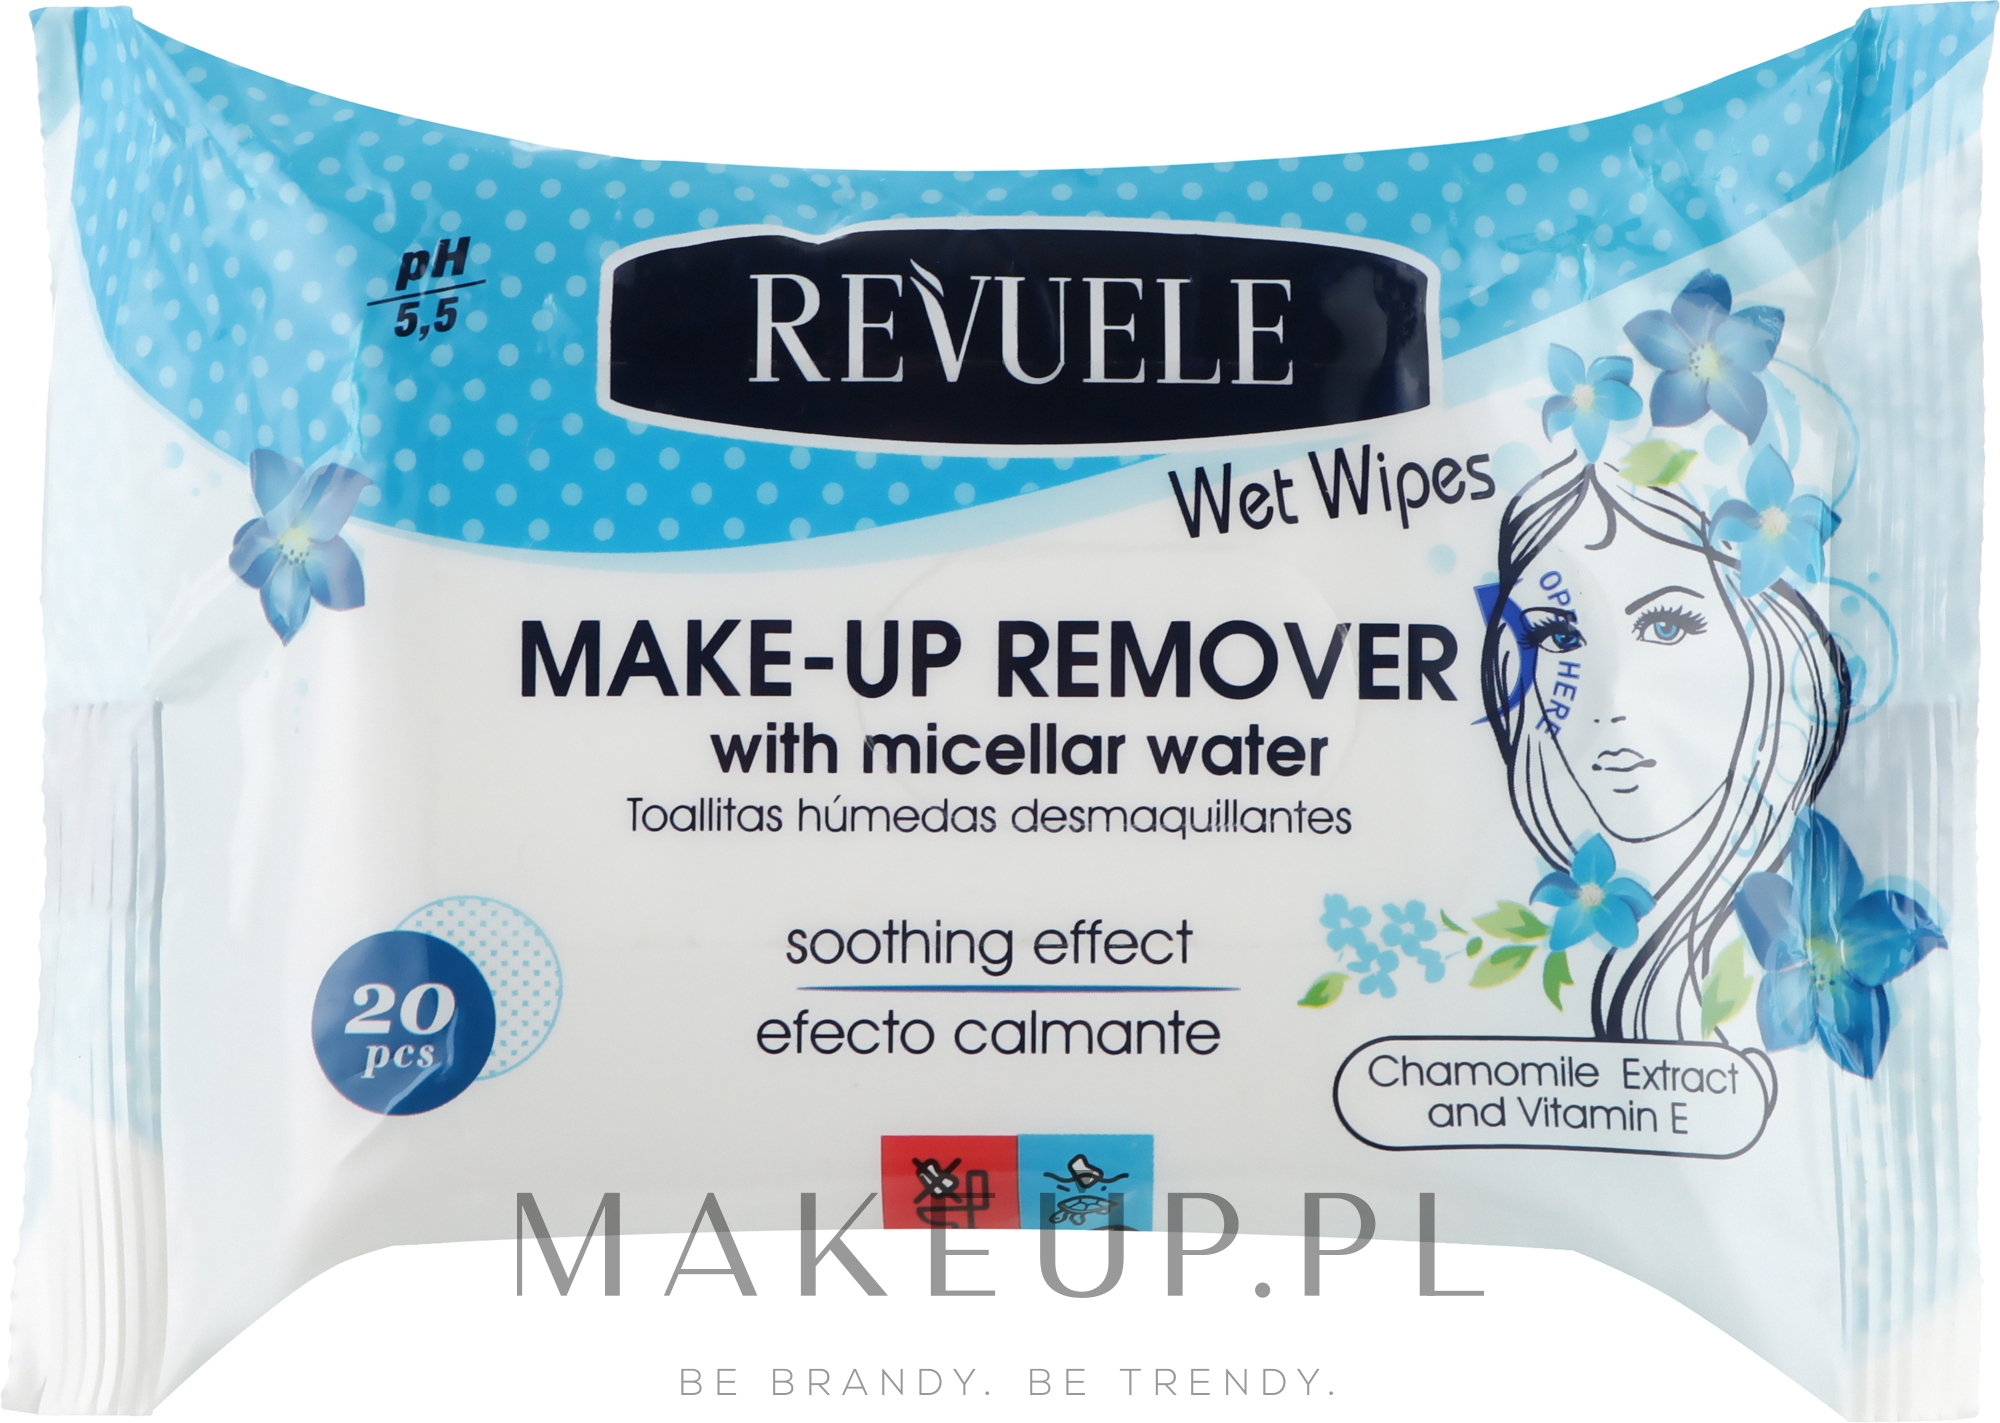 Mokre chusteczki do demakijażu z wodą micelarną - Revuele Wet Wipes Makeup Remove With Micellar Water — Zdjęcie 20 szt.